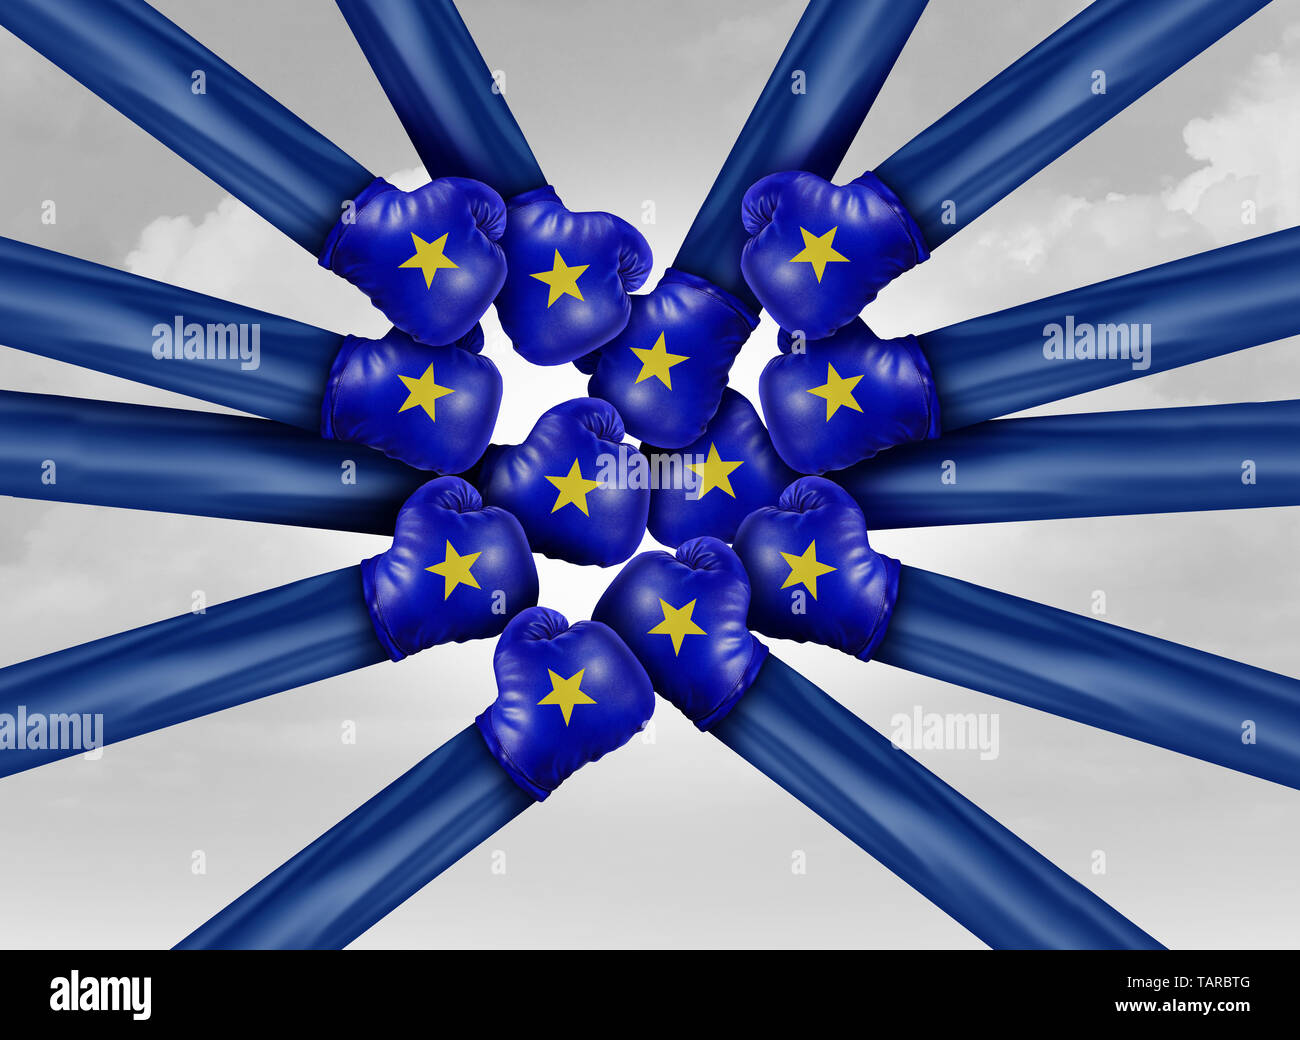 Europa lucha política como las elecciones europeas y la política de la UE con las luchas internas de los países que representan la bandera en una ilustración 3D de estilo. Foto de stock